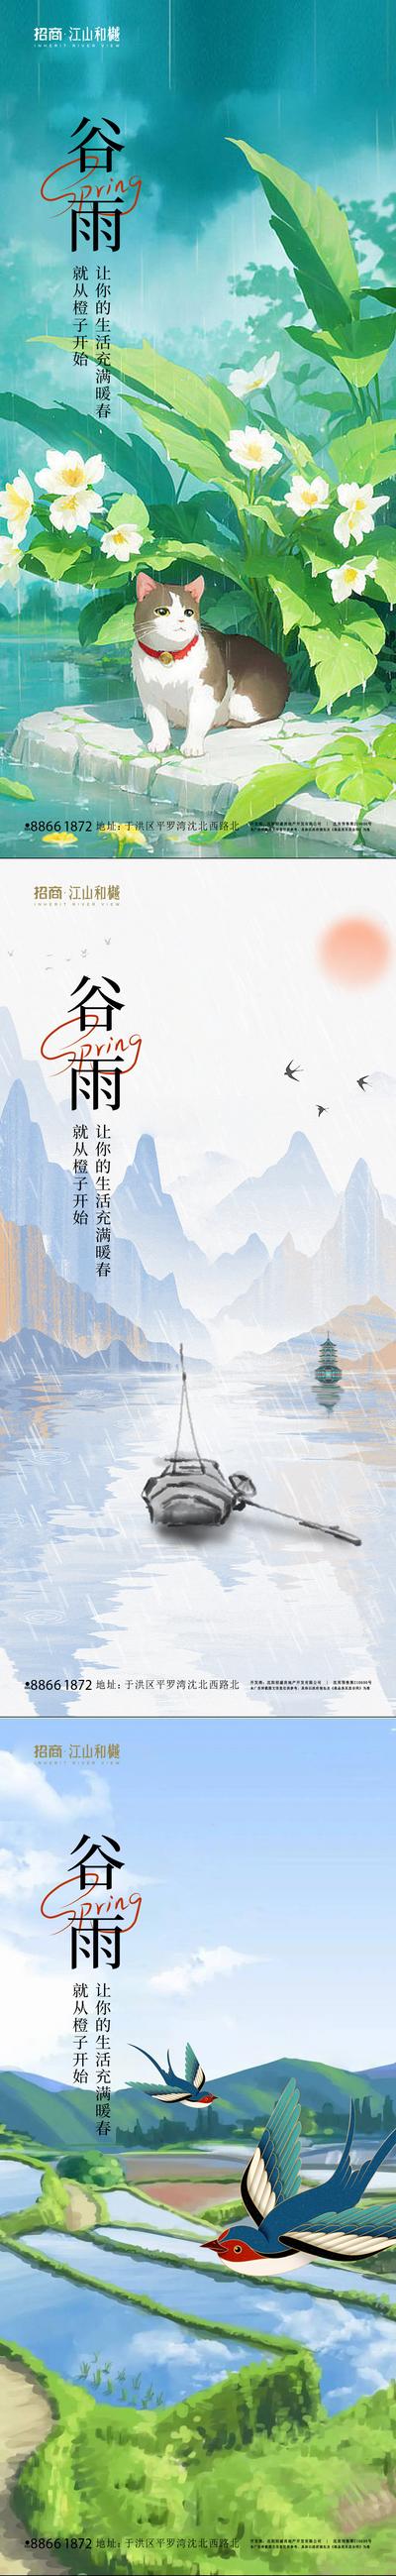 南门网 广告 海报 节气 谷雨 插画 猫 山水 系列